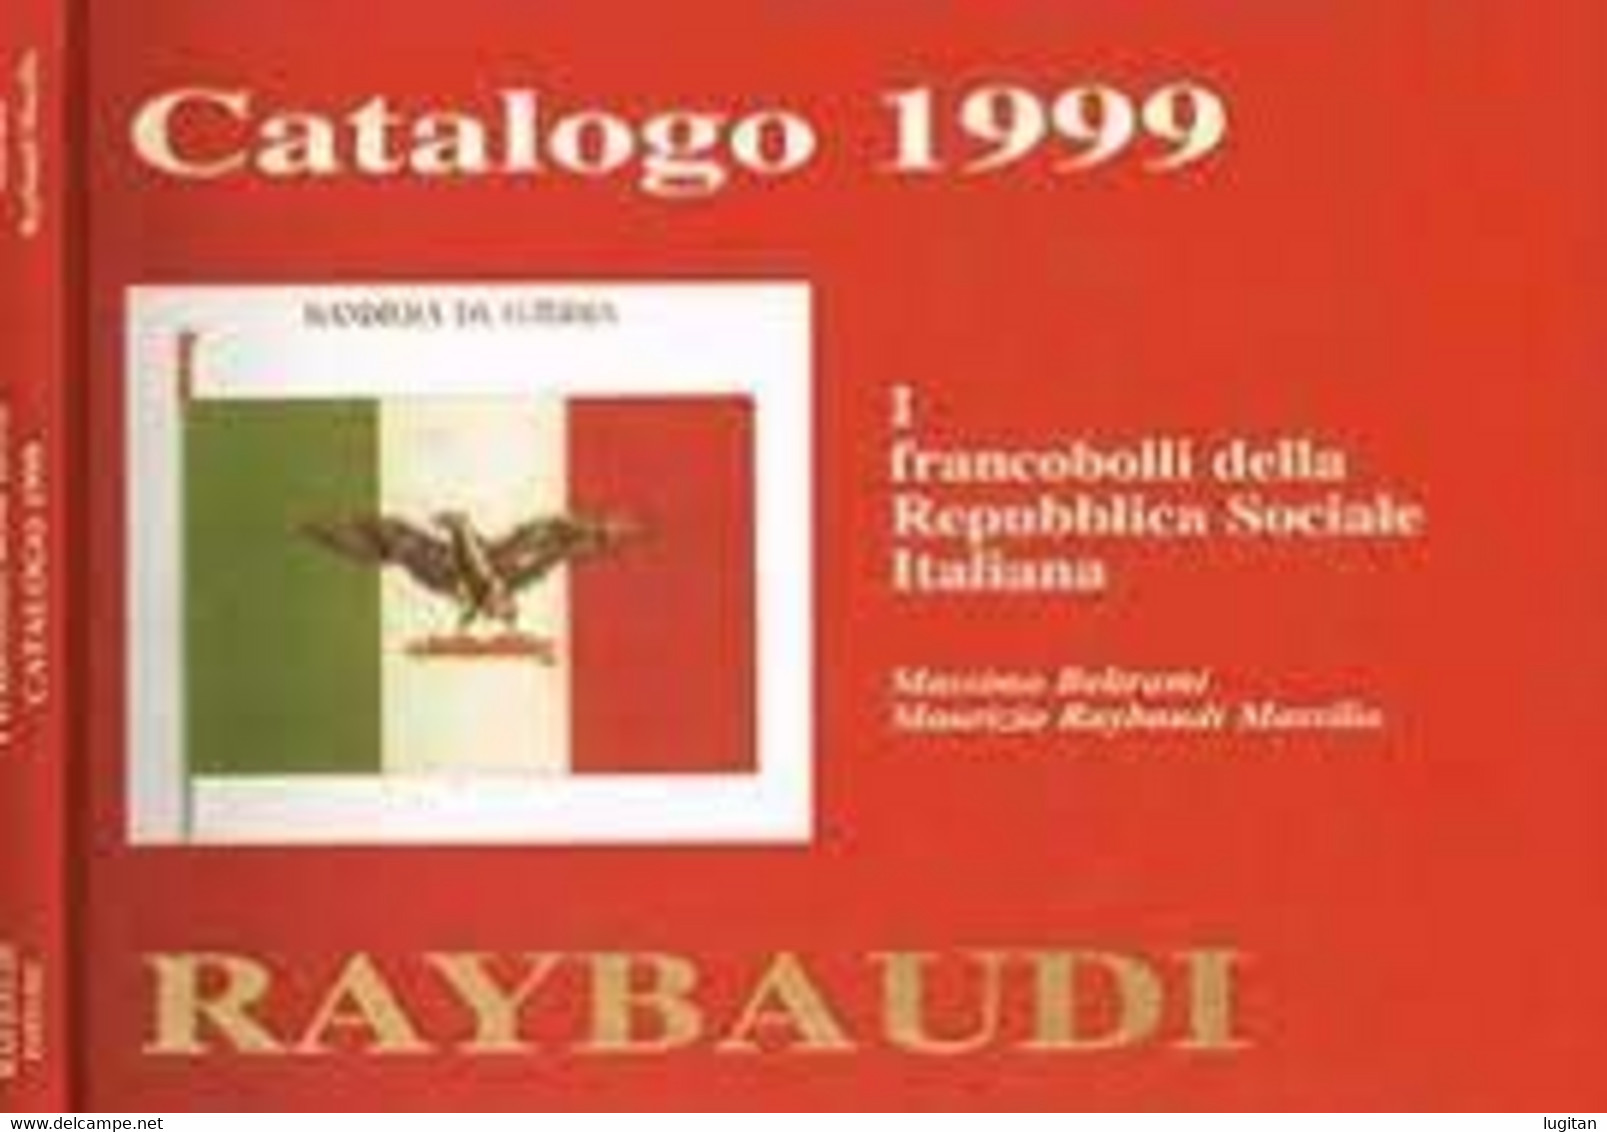 CATALOGO 1999 - I FRANCOBOLLI DELLE REPUBBLICA SOCIALE - RAYBAUDI - Guerre 1939-45